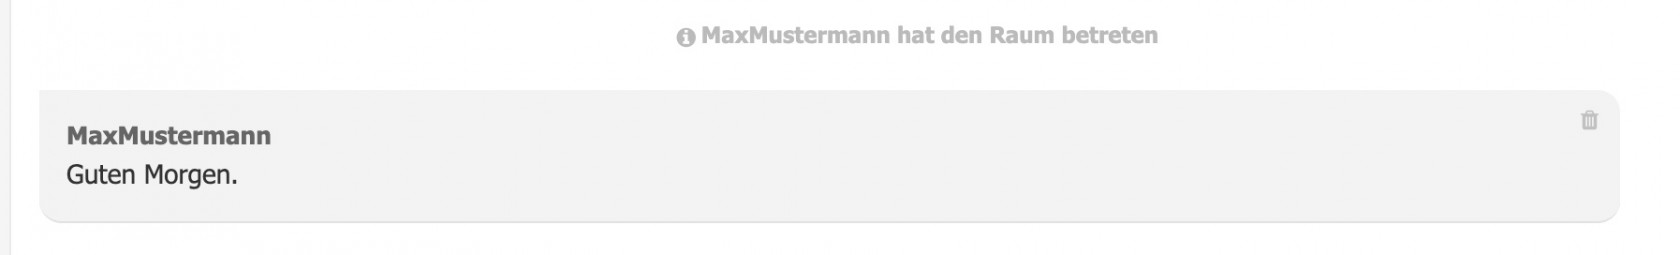 Chat-MaxMustermann-eingeloggt.jpg